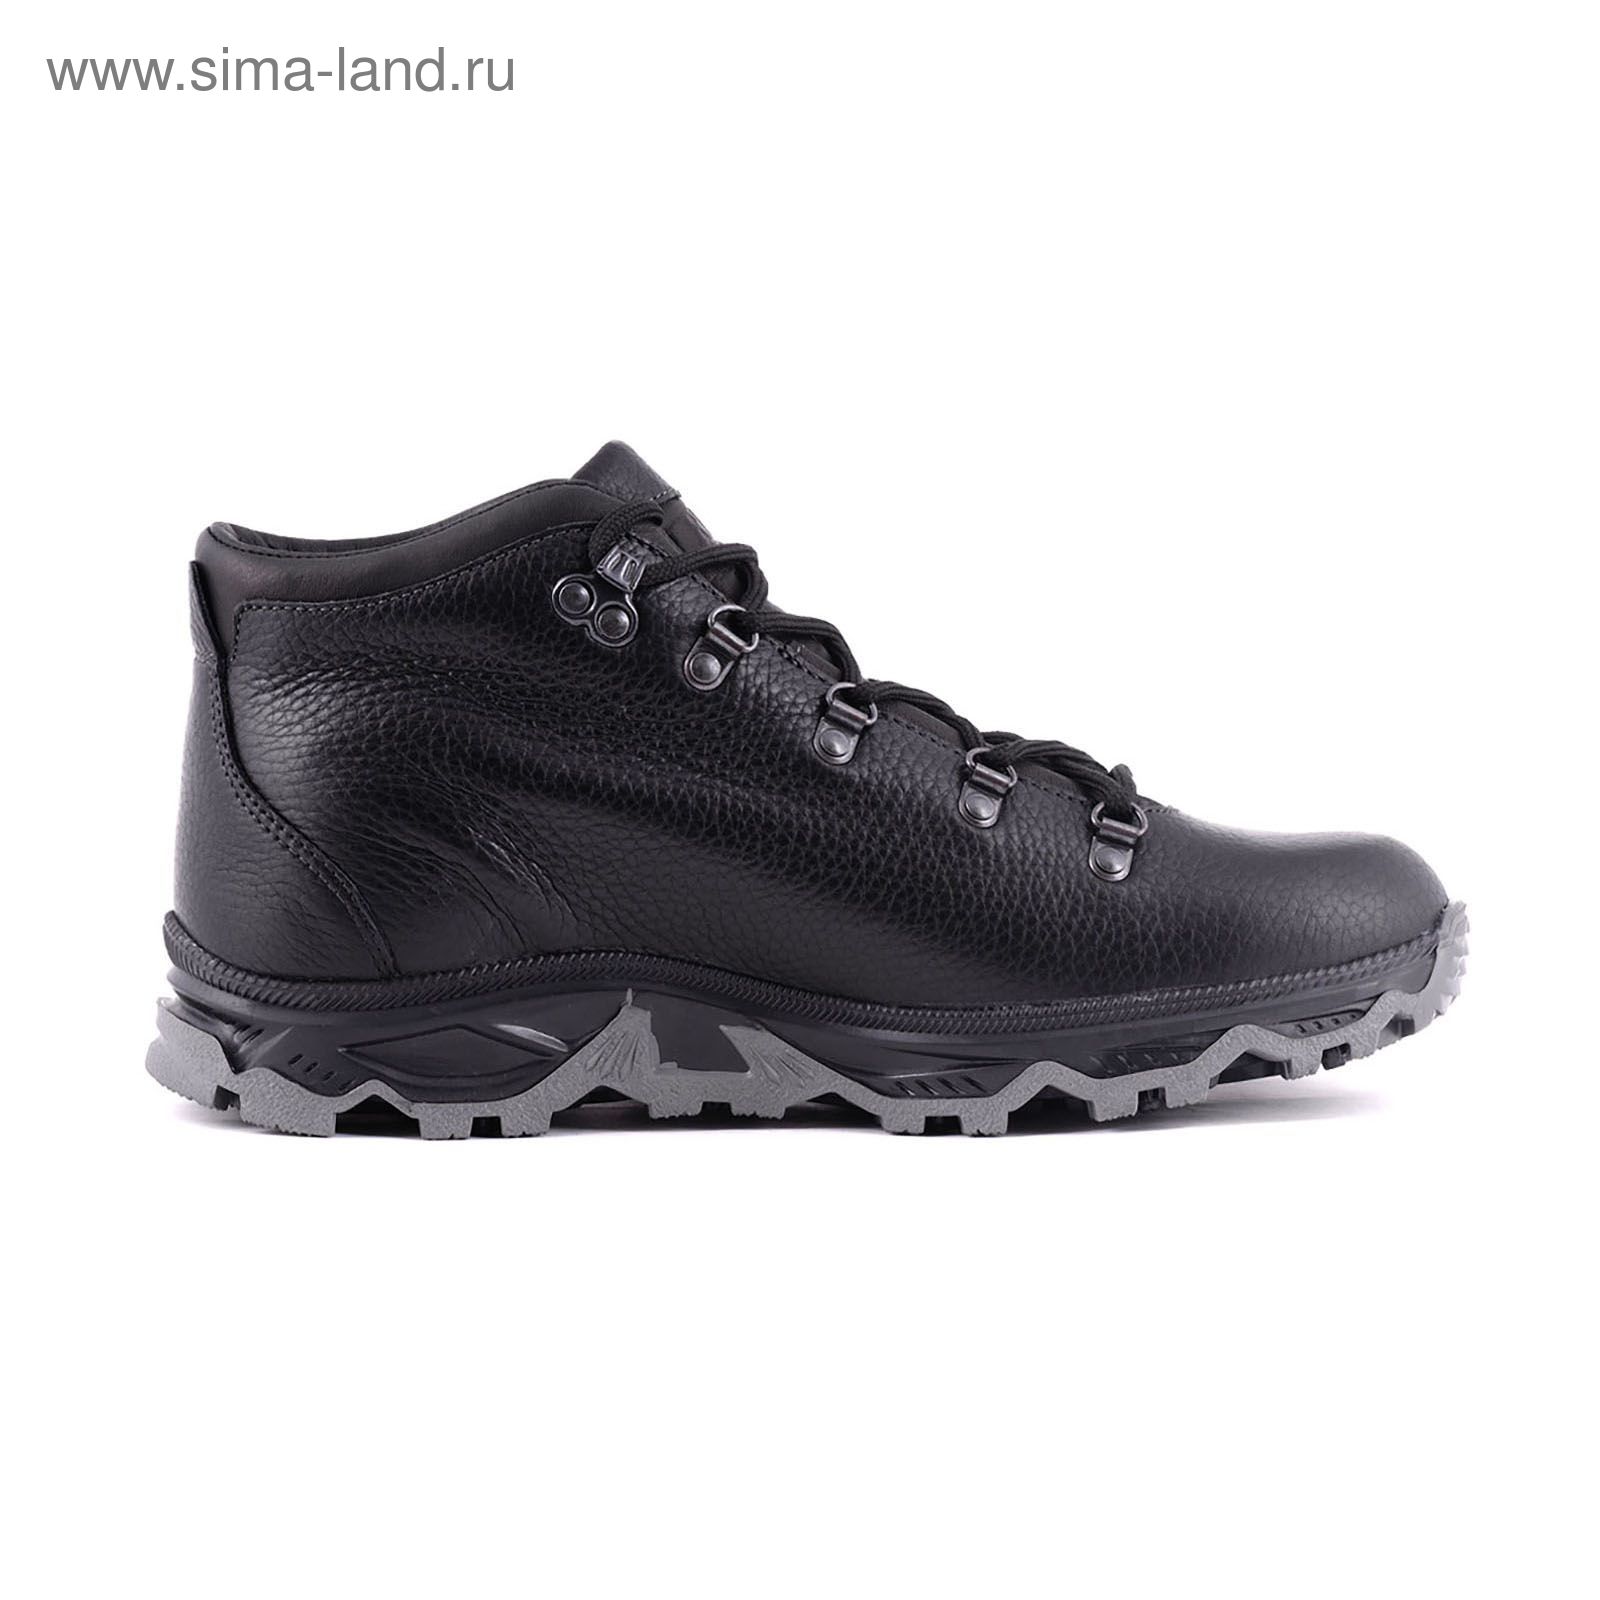 Ботинки TREK Анды 95-01 мех (черный) (р.40)